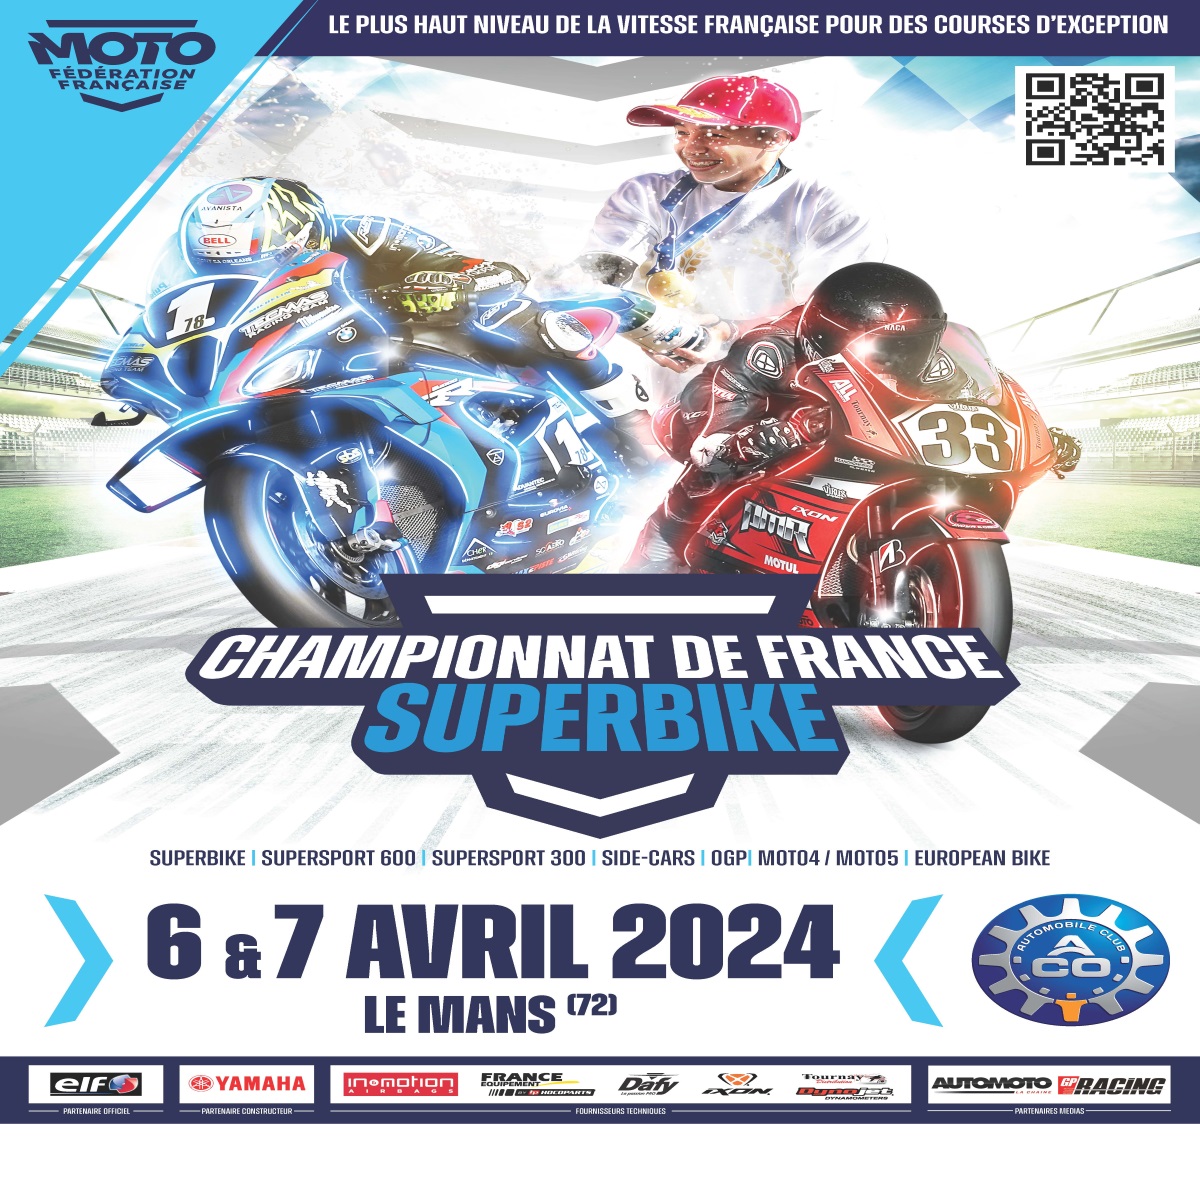 Info Vitesse - Superbike Le Mans 6 et 7 avril